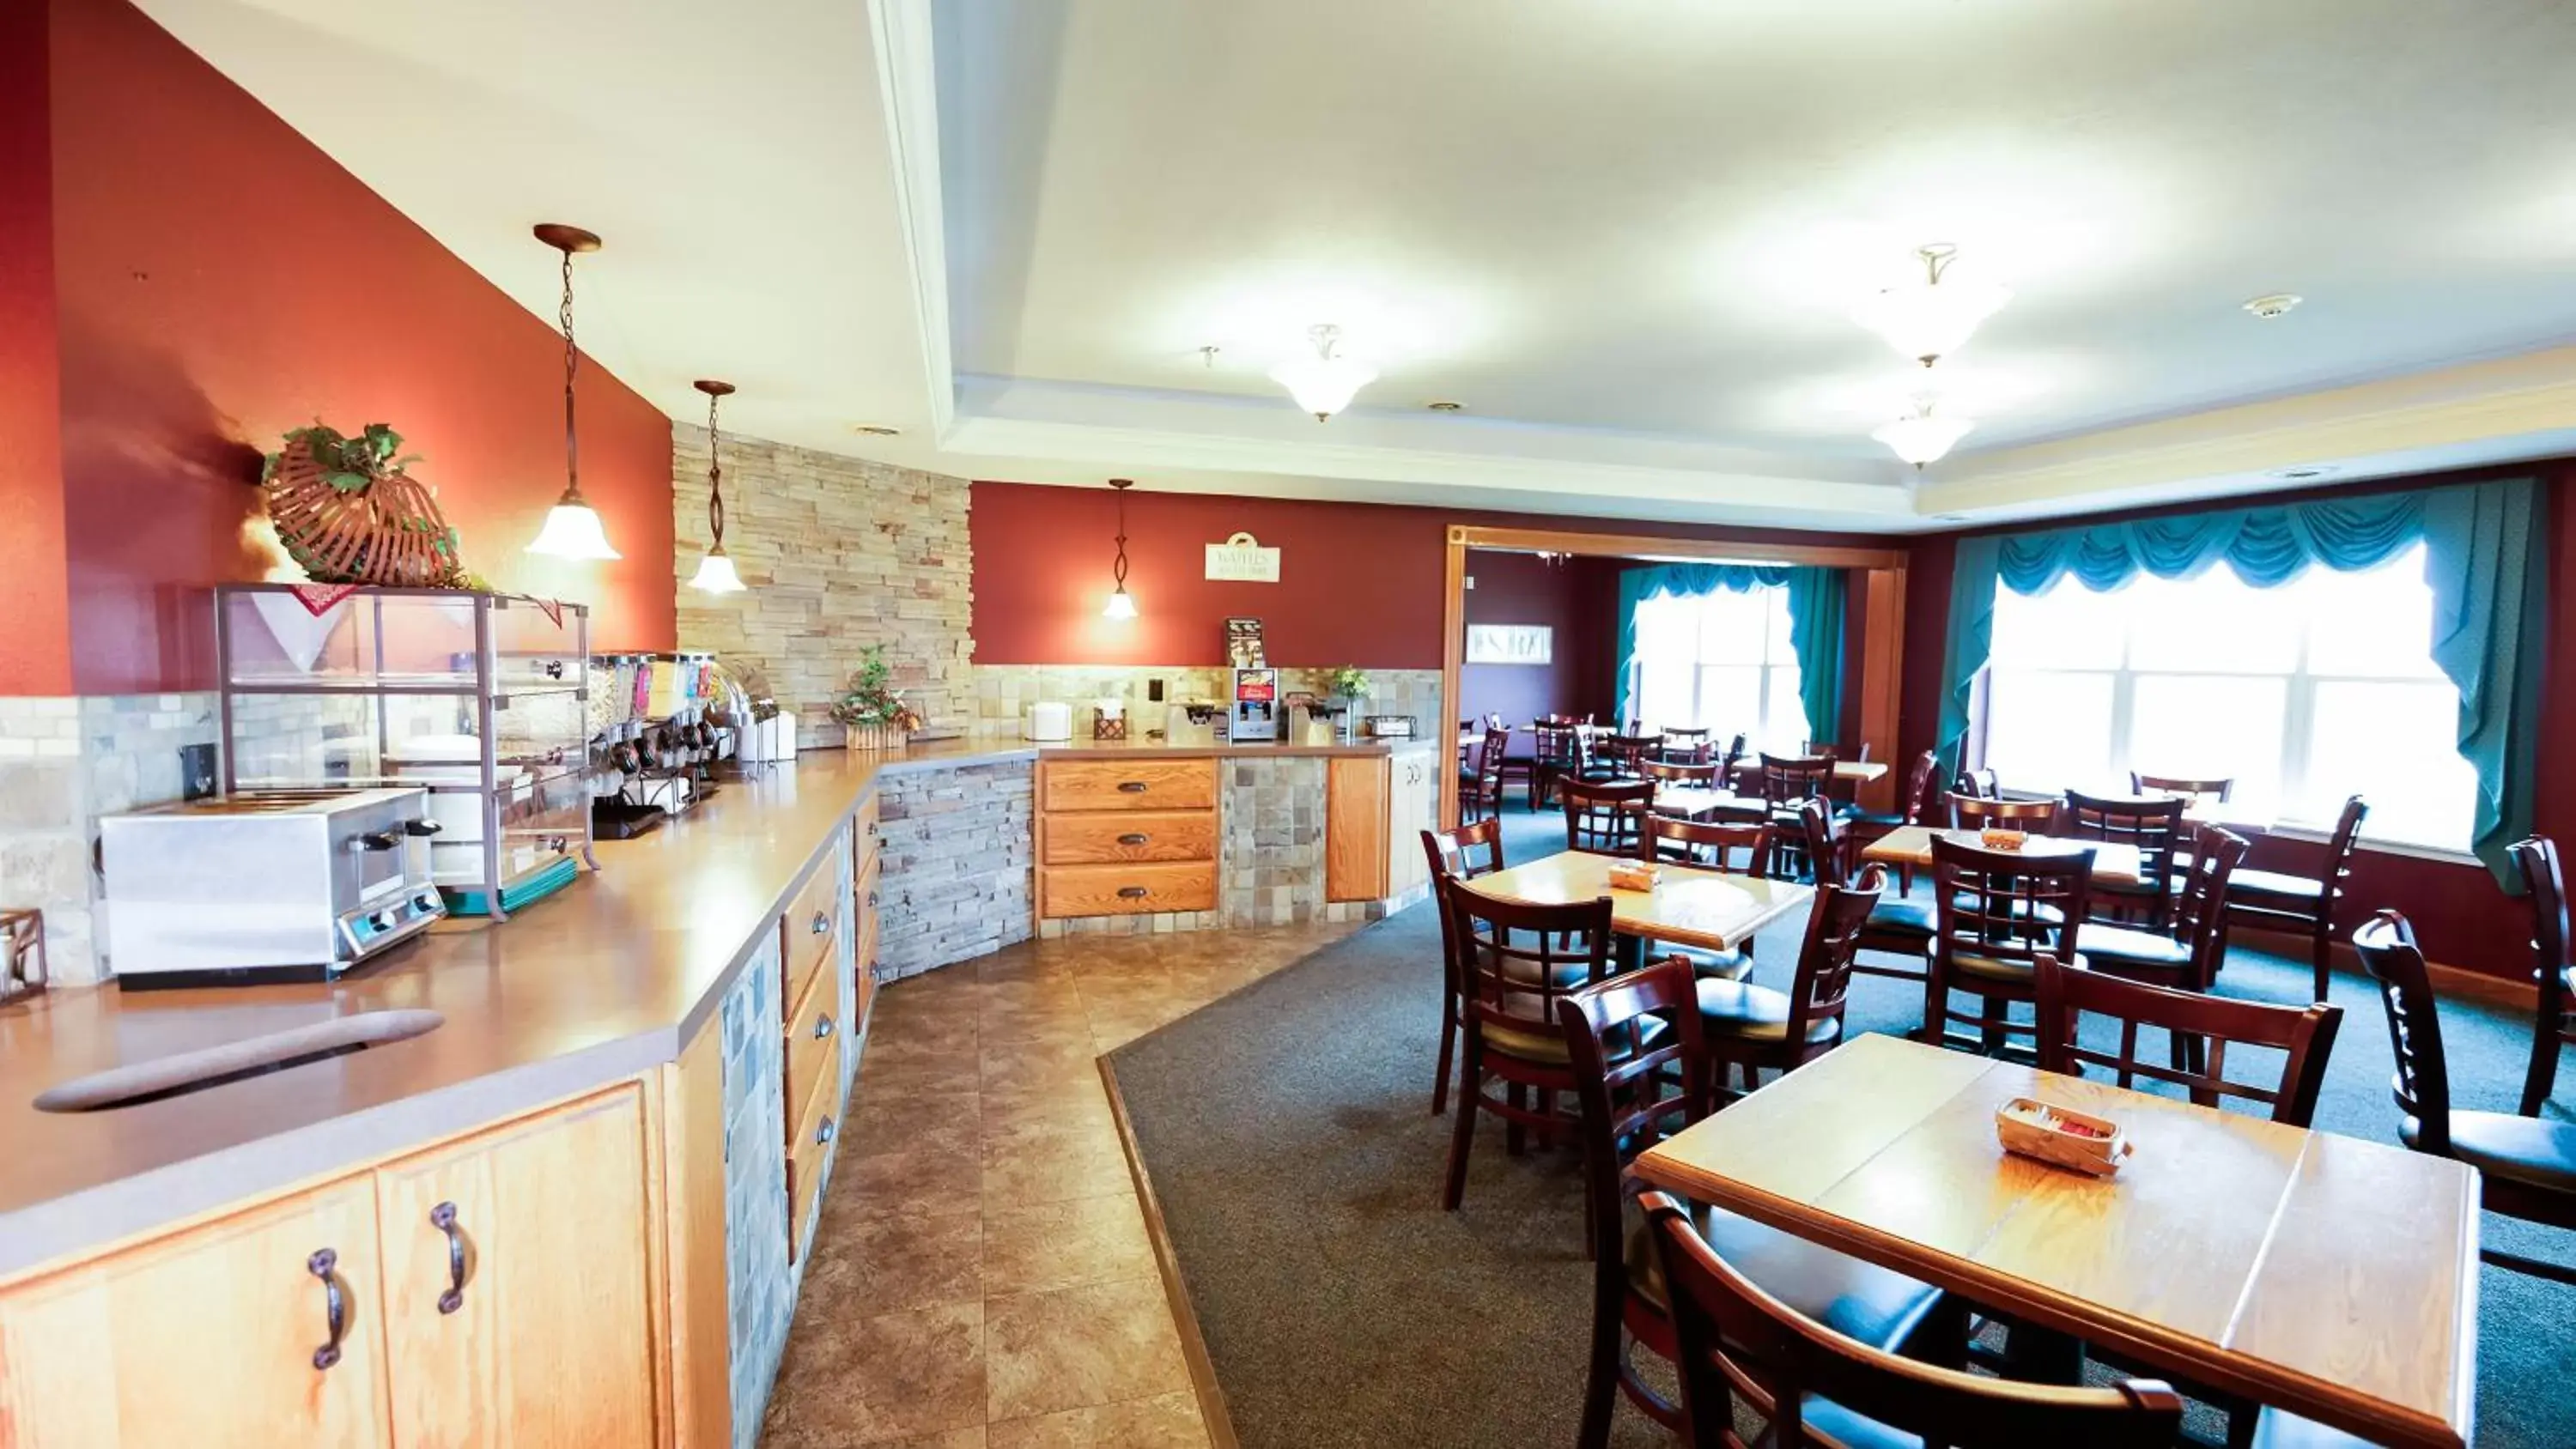 Buffet breakfast, Restaurant/Places to Eat in Van Buren Hotel